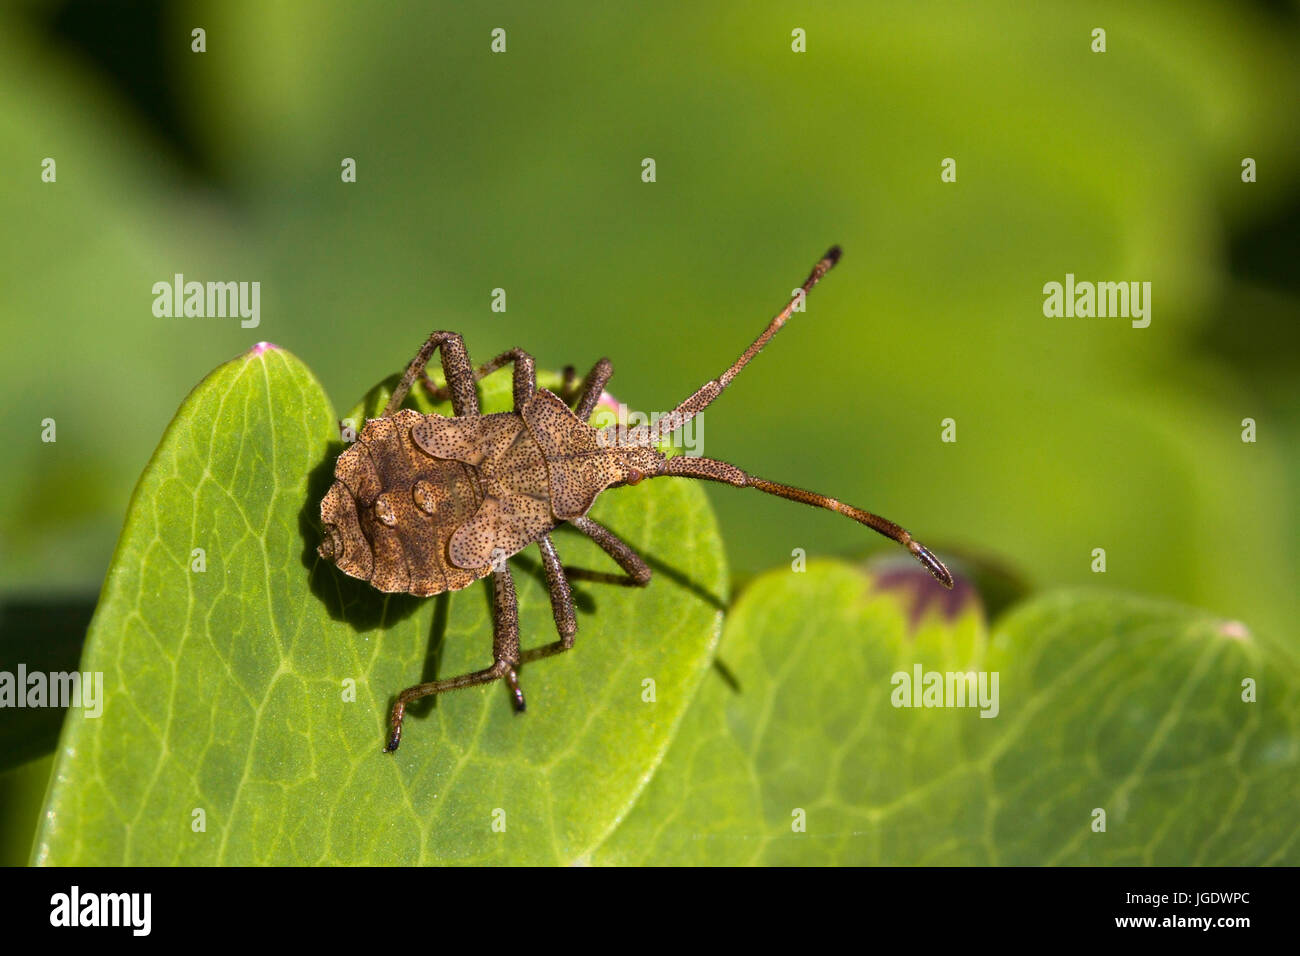 Squash bug, Coreus marginatus, Lederwanze (Coreus marginatus) Foto Stock